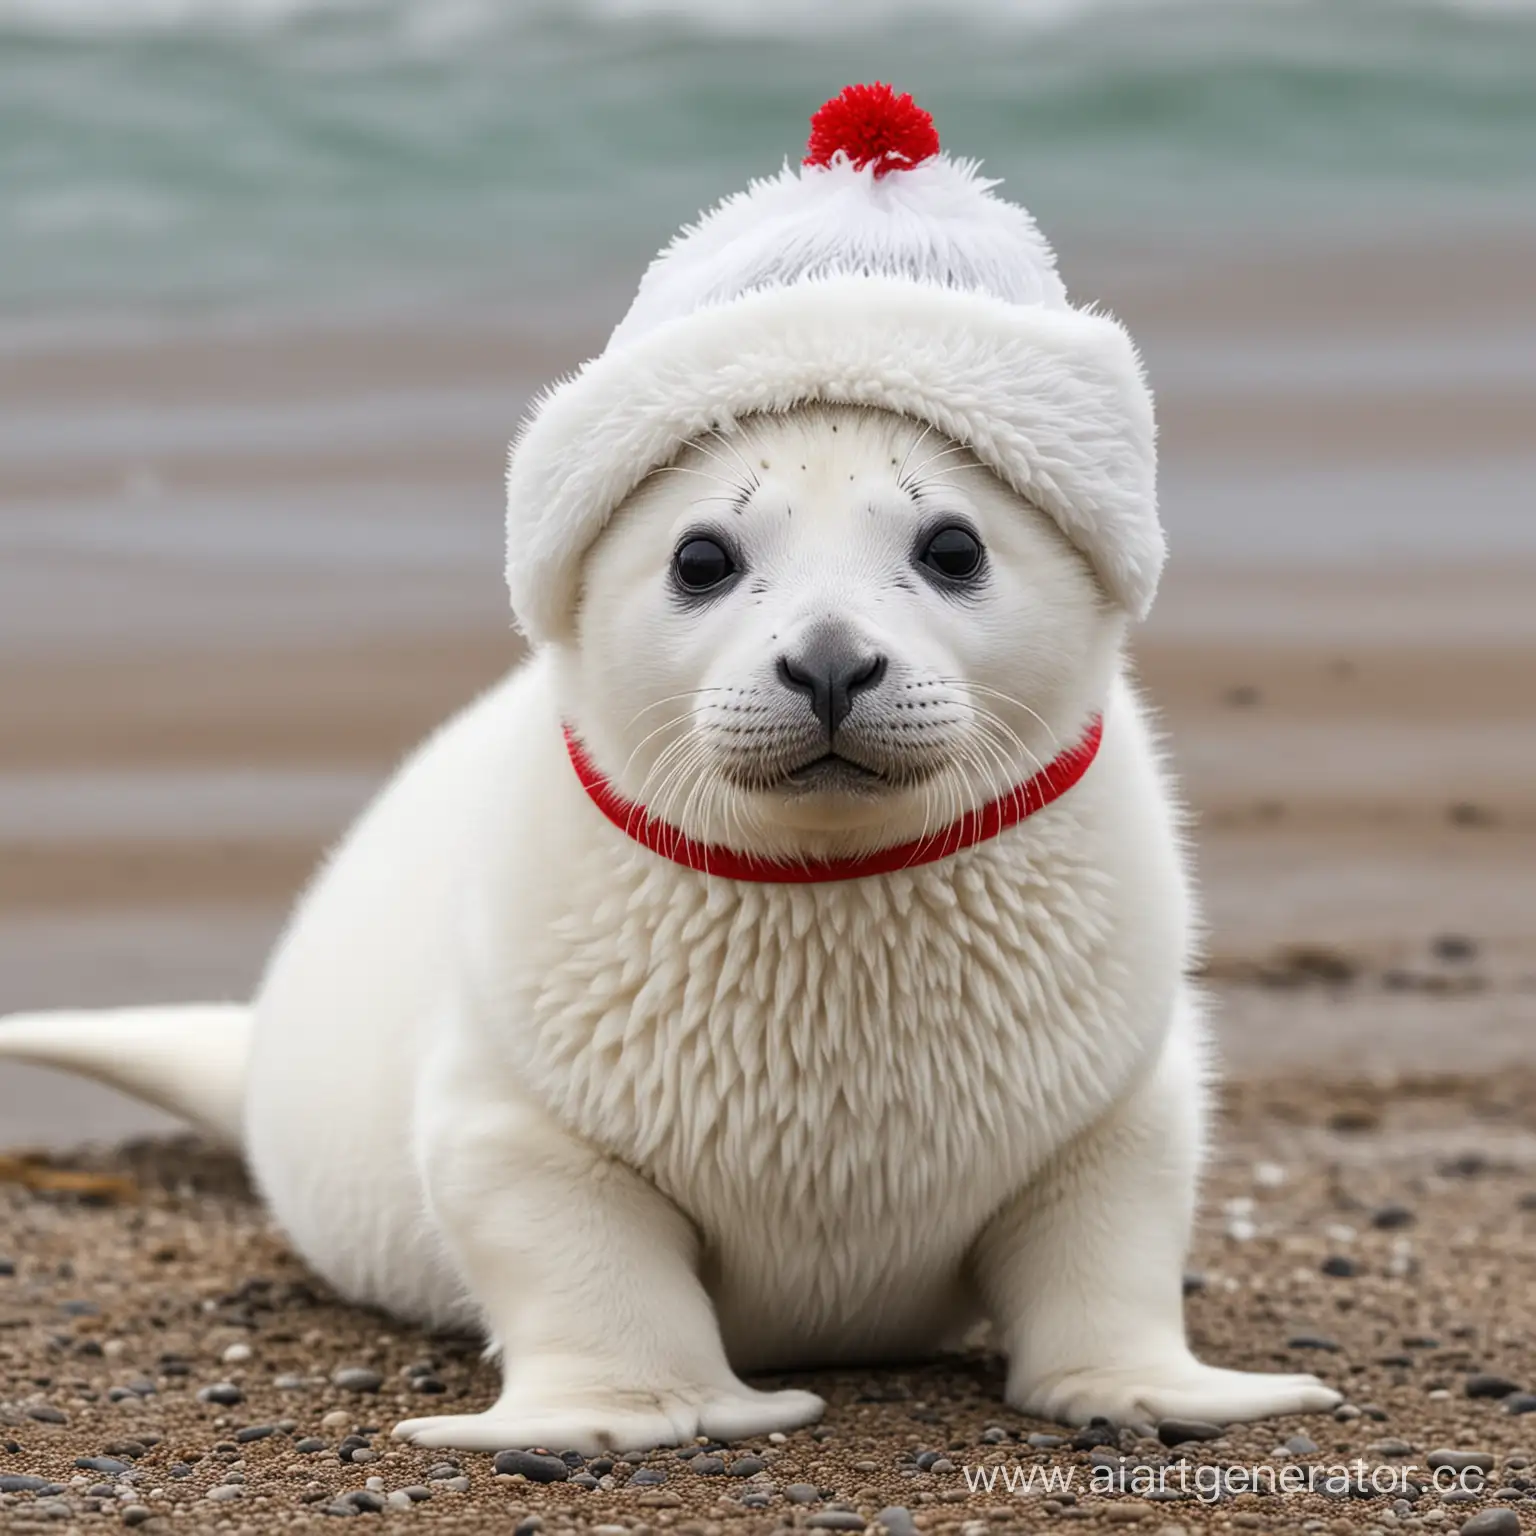 Белый пушистый маленький детеныш тюленя, на голове красная косынка